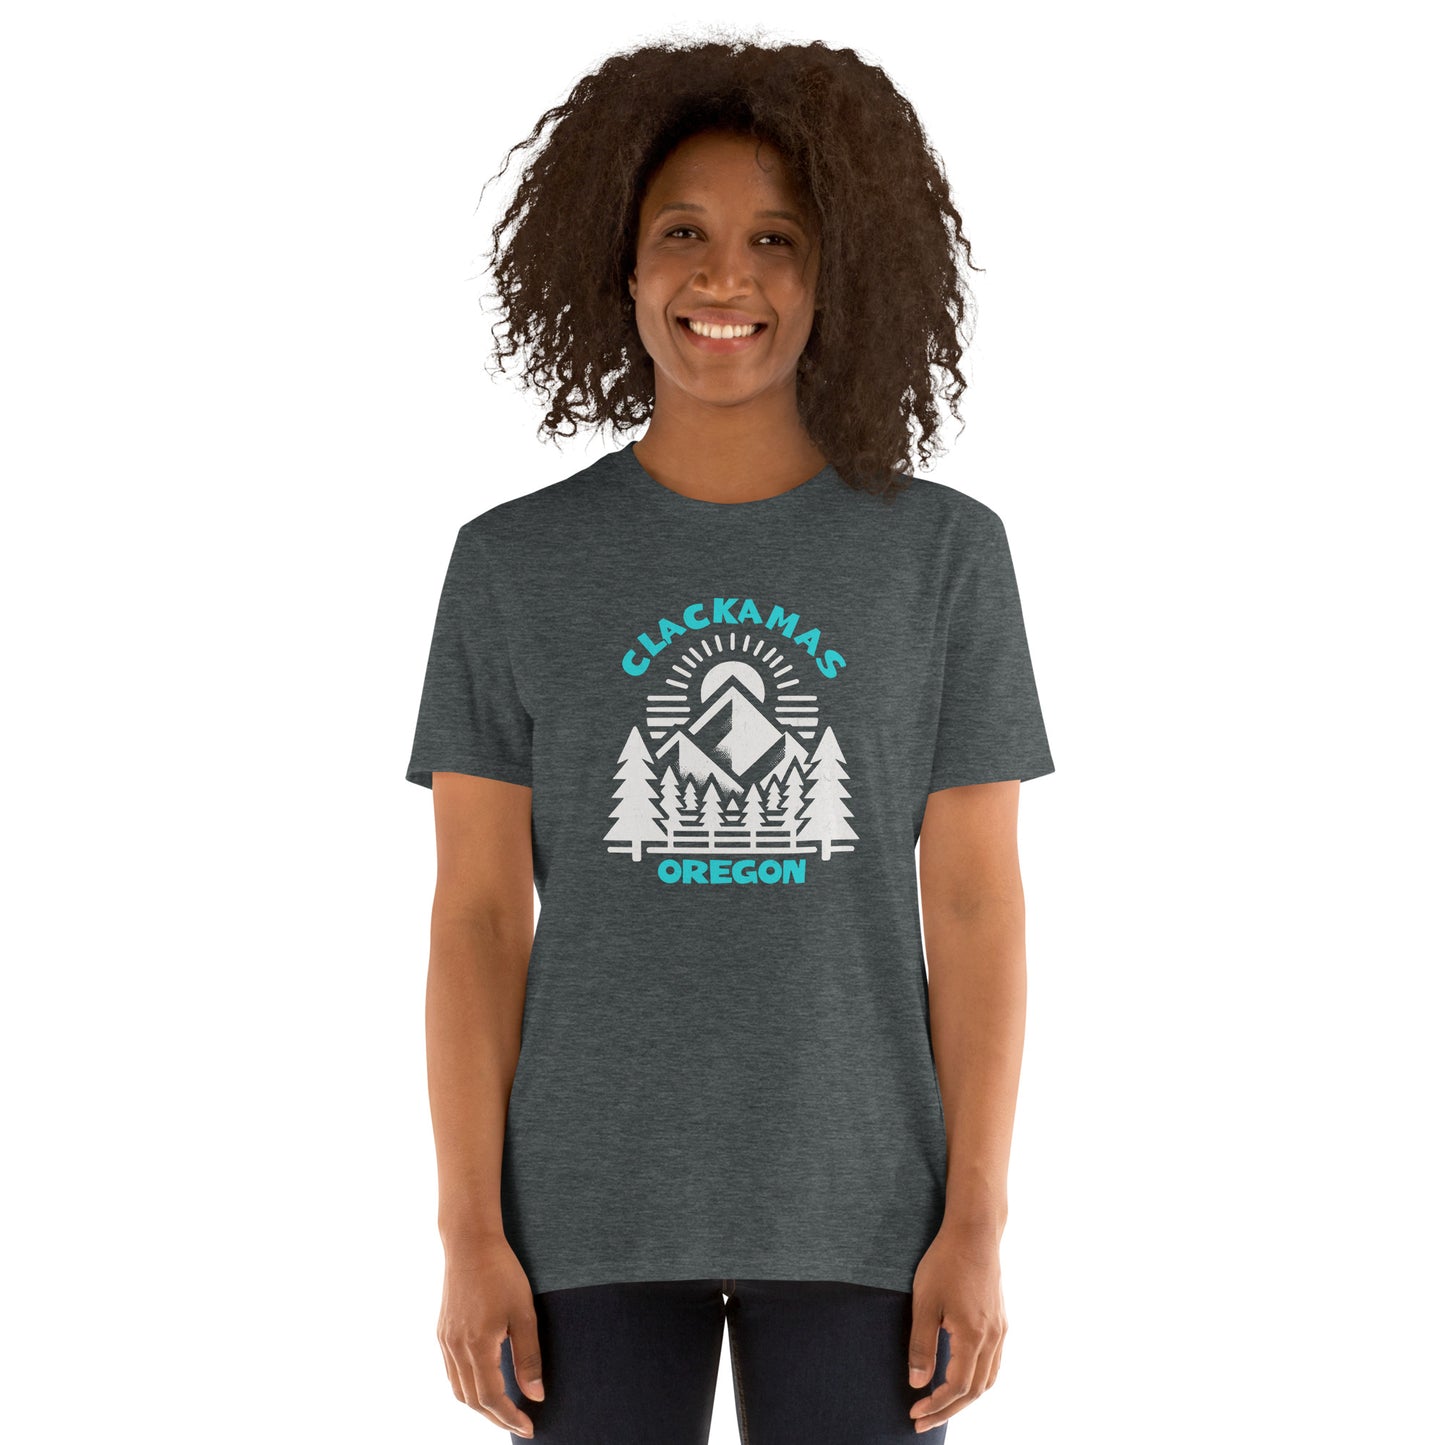 Clackamas - featured cities - Short-Sleeve Unisex T-Shirt